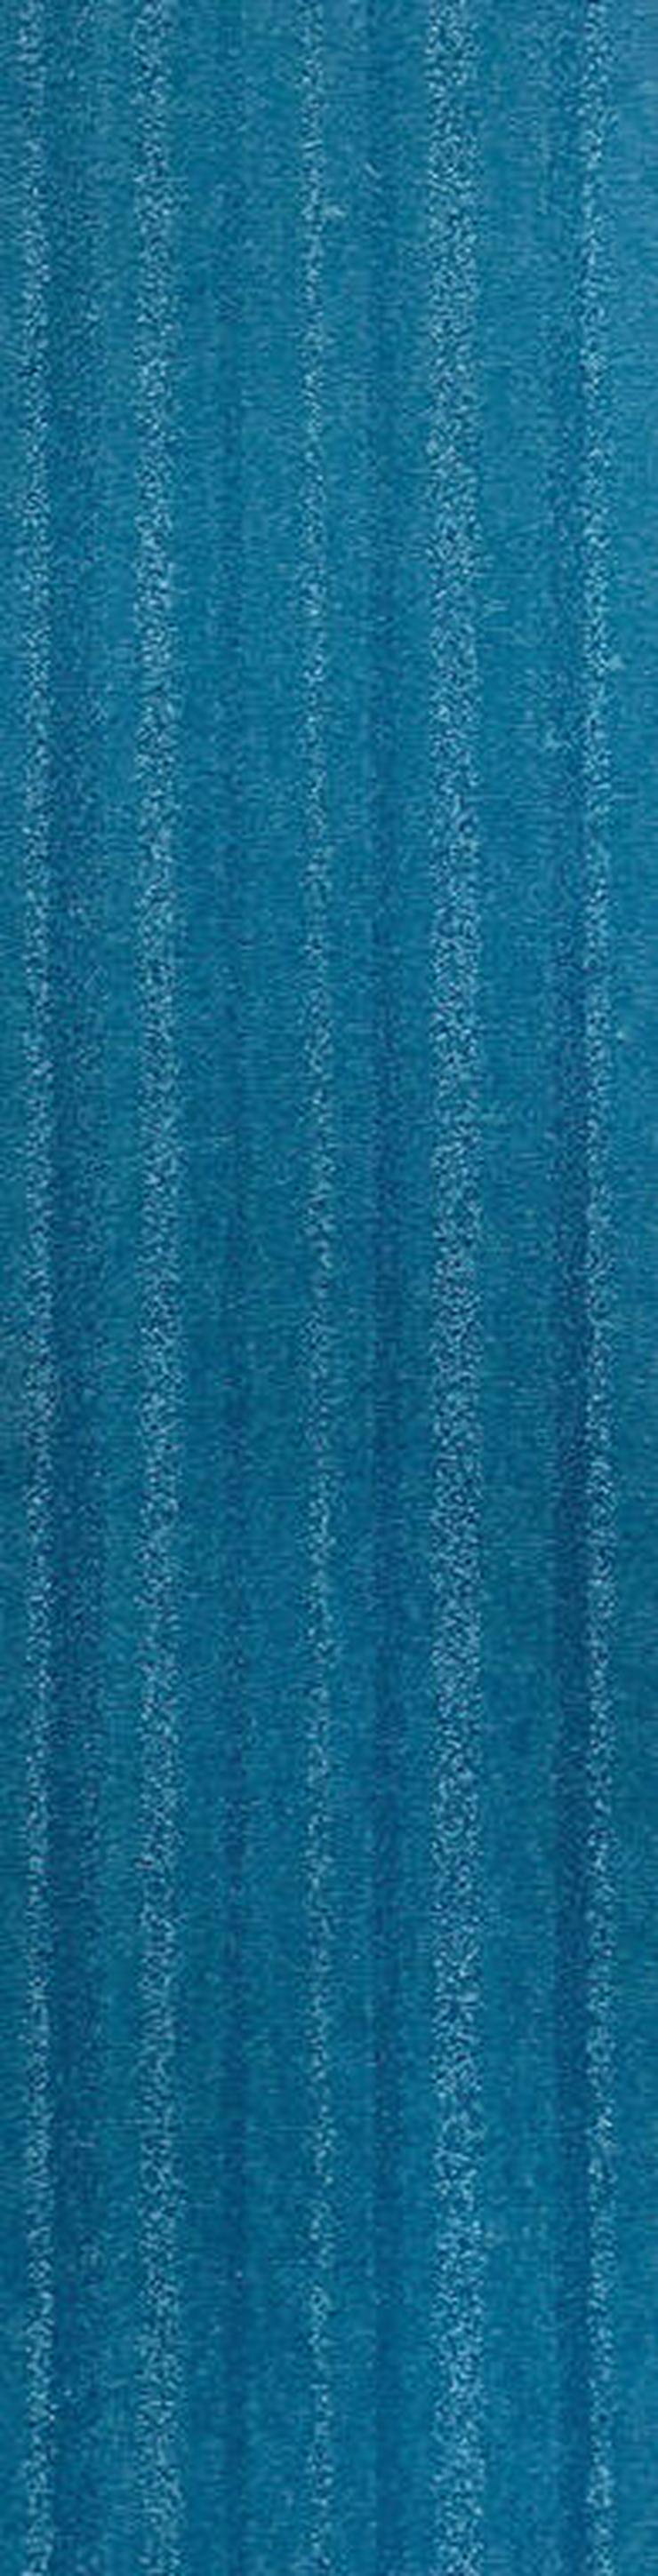 Günstige Menge blauer Teppichfliesen 25x100cm Neu - Teppiche - Bild 3